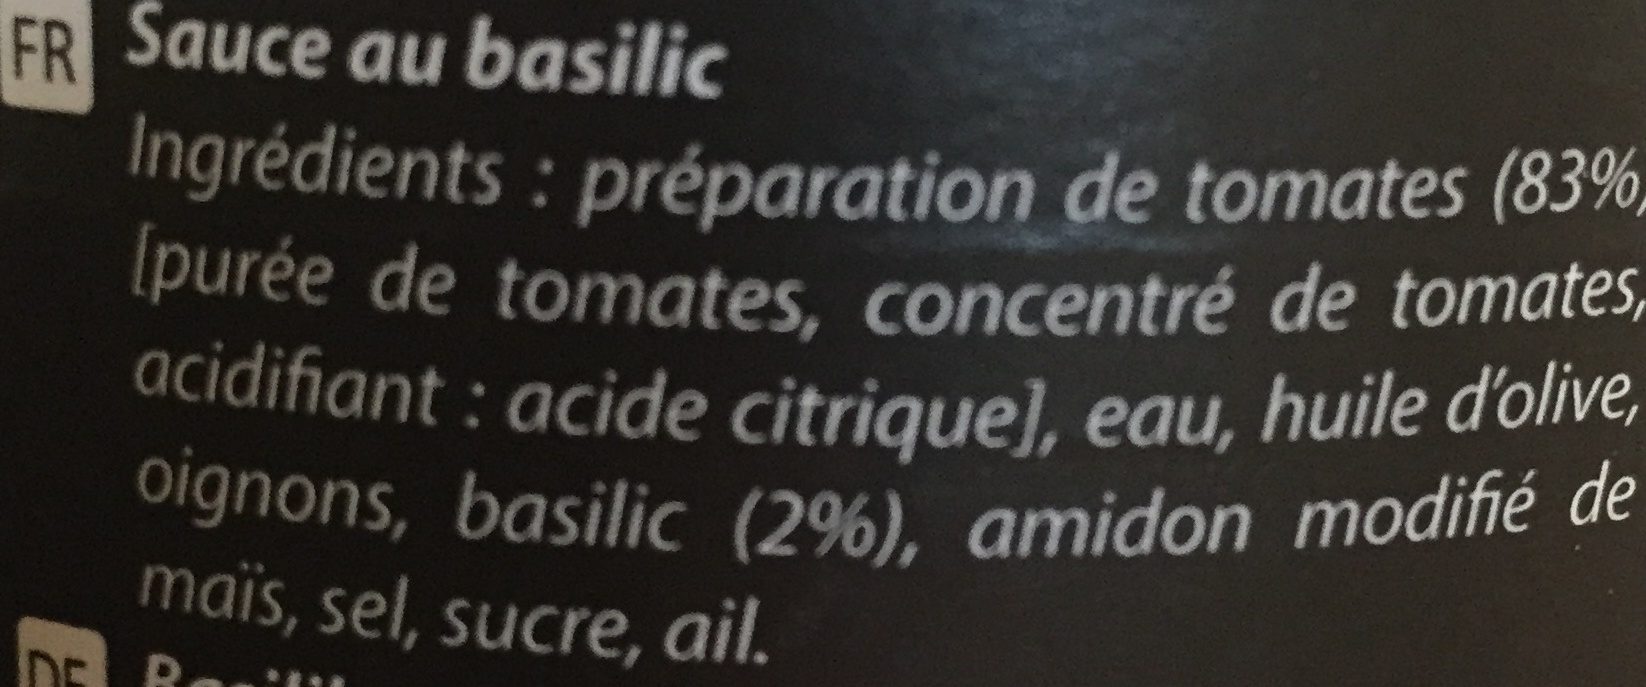 Sauce au basilic - Ingrediënten - fr